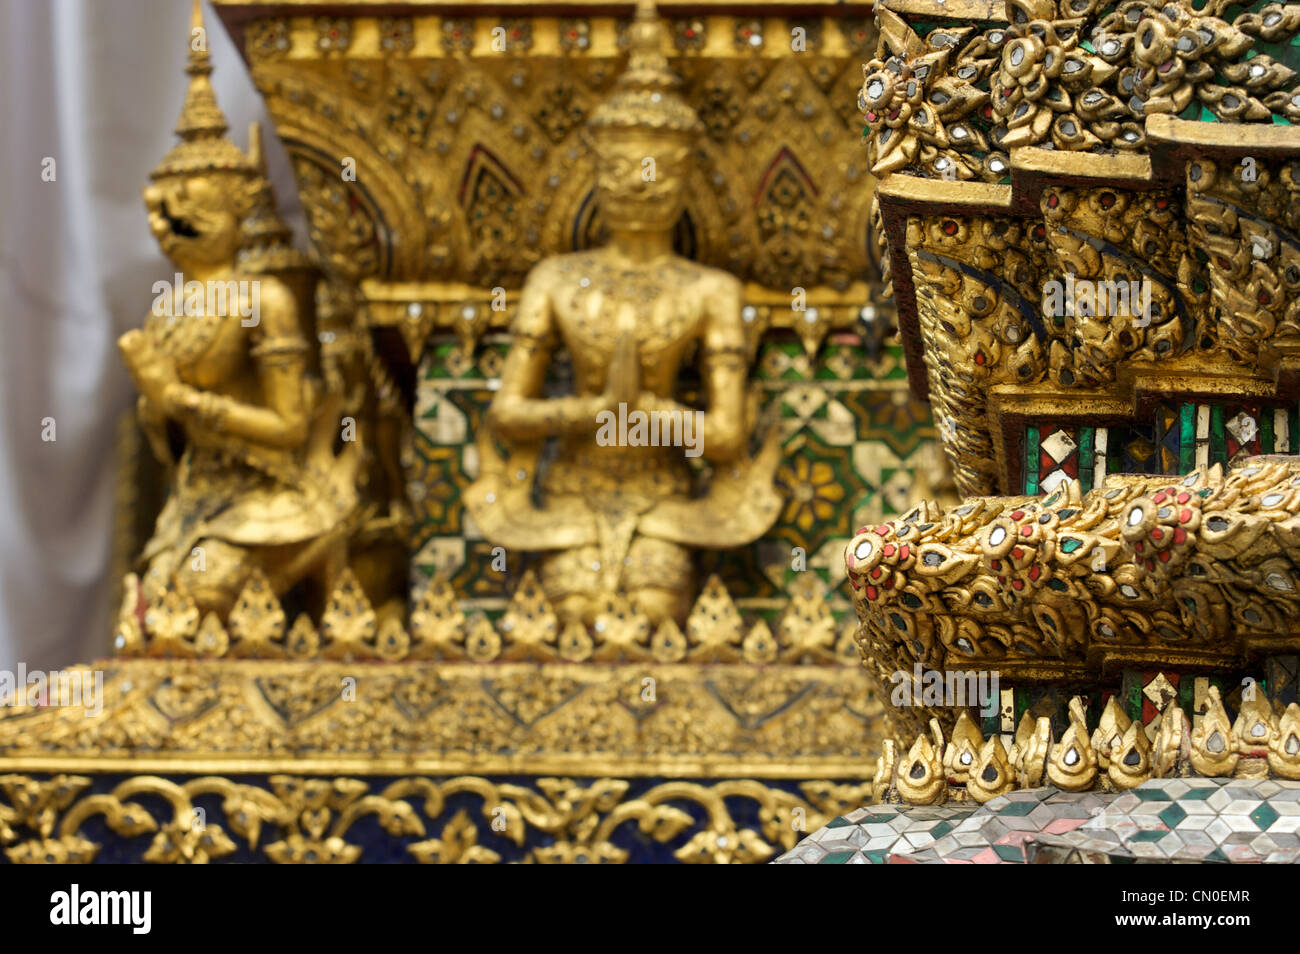 Spiegel, Mosaike, bemalte Fliesen, Dekorationen, Grand Palace, Wat Pra Keaw, Thai, Buddhismus, Religion, Bangkok, Thailand Stockfoto